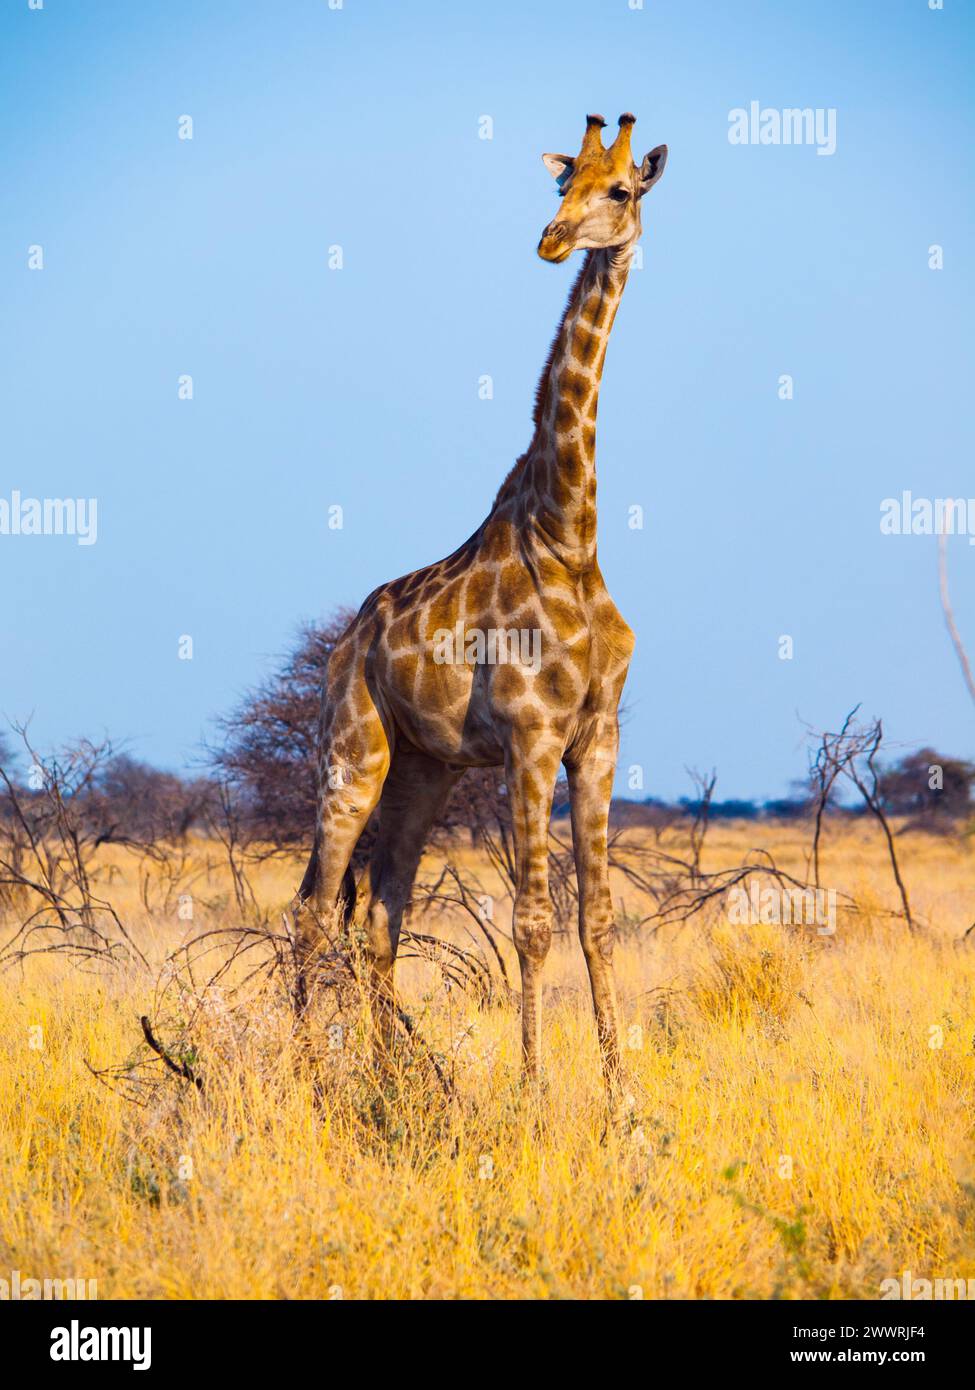 Giraffe standinf in yellow dry grass of savanna Stock Photo